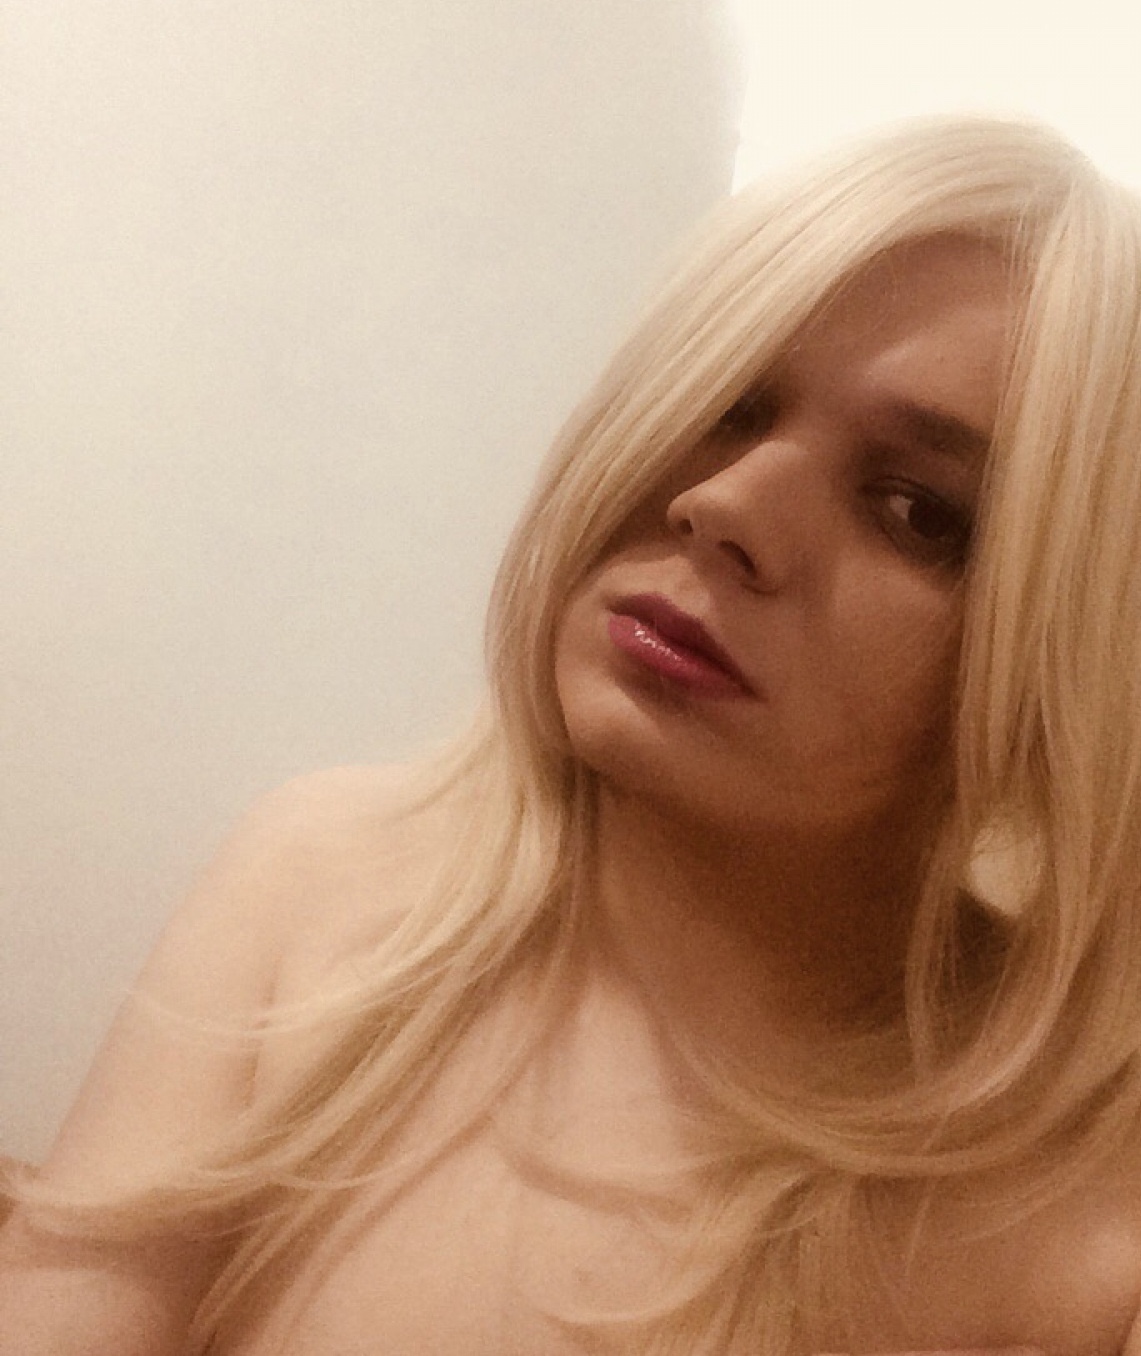 Проститутка Трансвестит Джессика 22 лет сделает качественно анилингус и позовет в гости